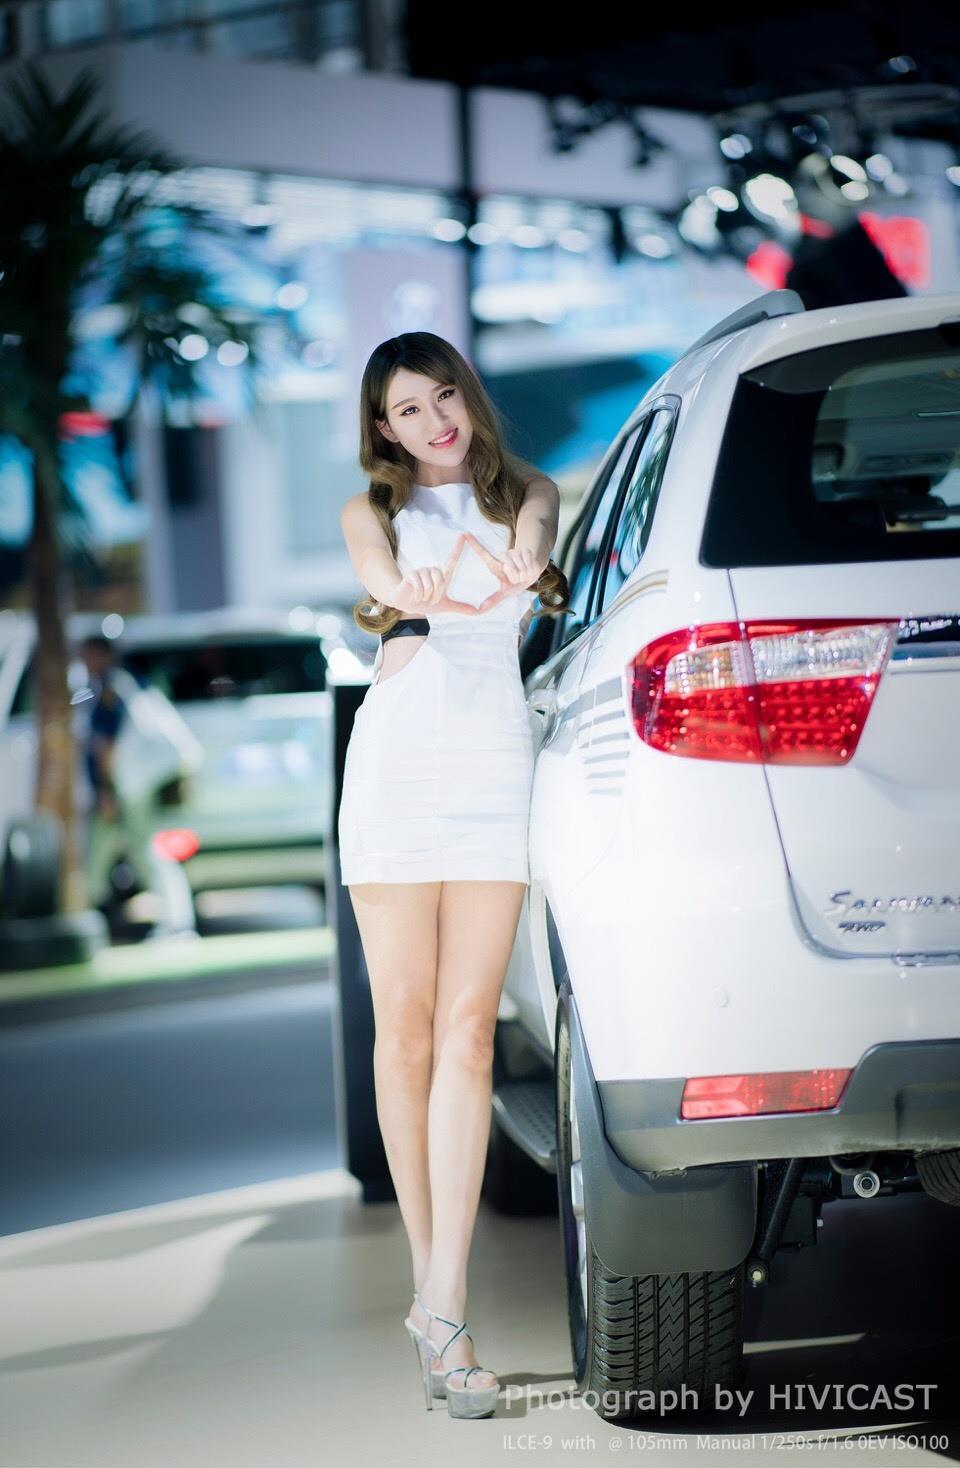 2017广州车展 北京福田汽车展台 身穿白色紧身连身裙的美女车模,